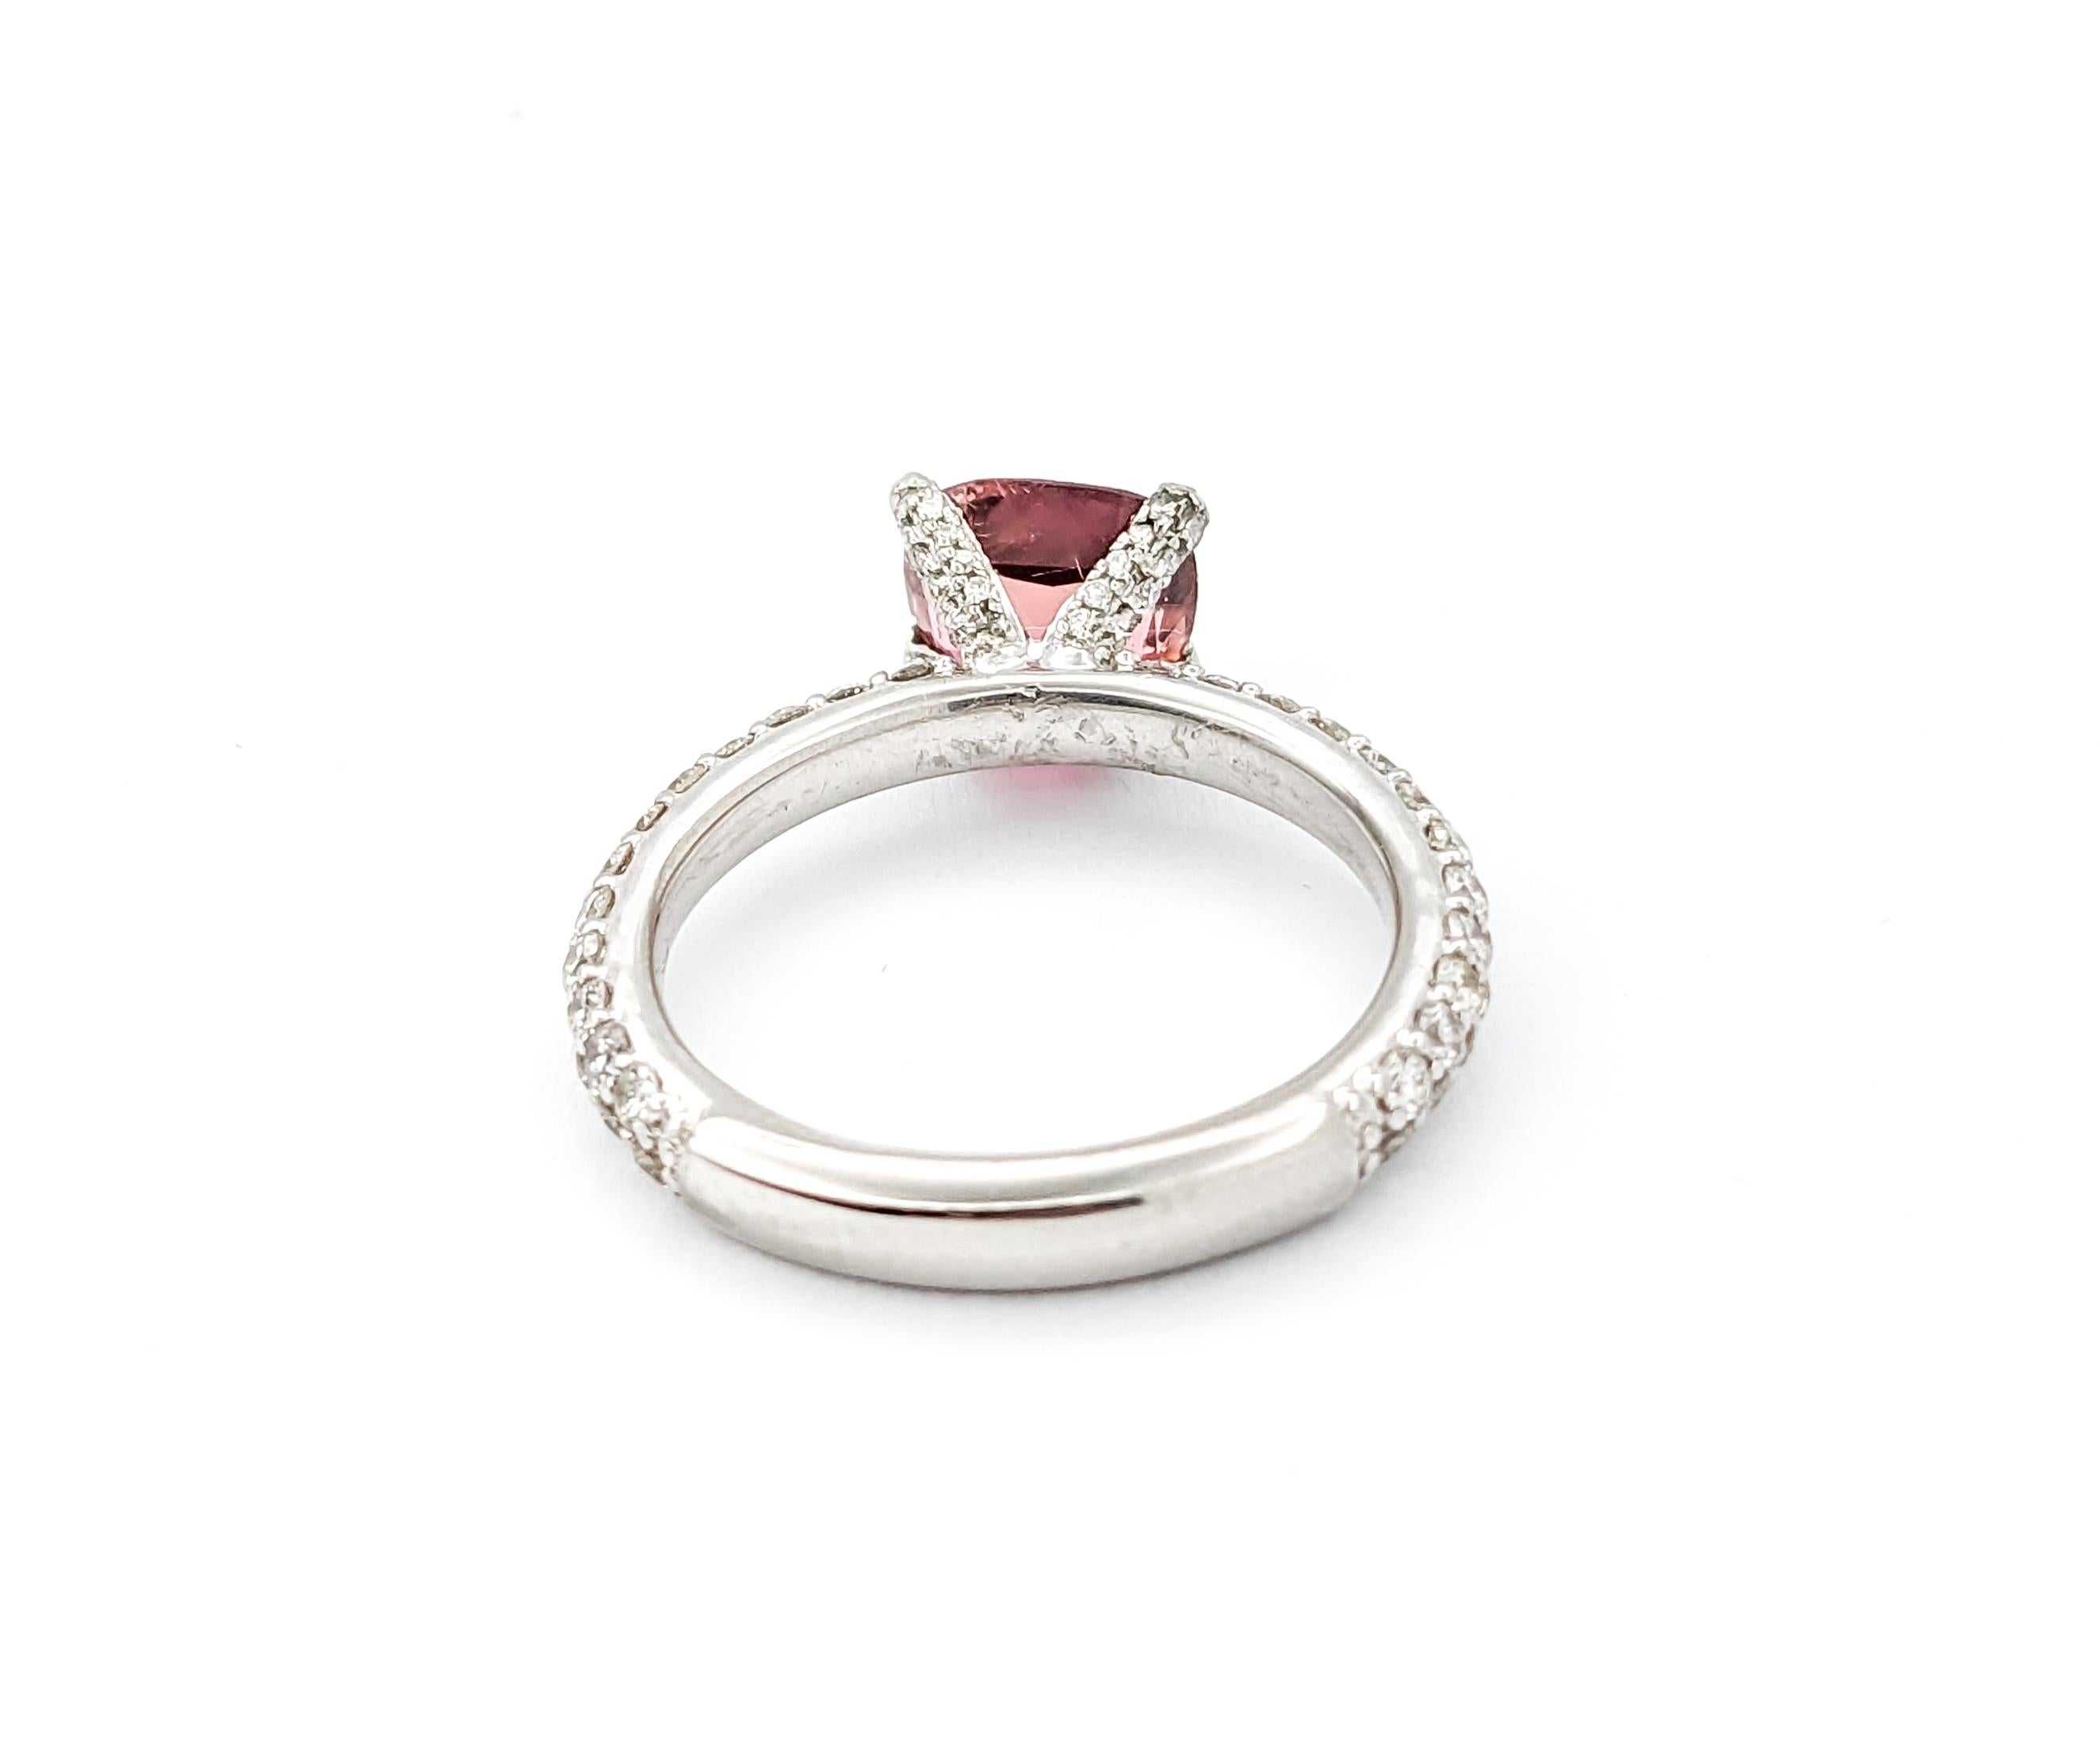 1.50ct Tourmaline rose  Bague de diamant en platine

Voici cette exquise bague en tourmaline rose, réalisée de main de maître en platine 950 brillant. Cette bague est ornée d'une tourmaline rose captivante de 1,50ct. Des diamants brillants de